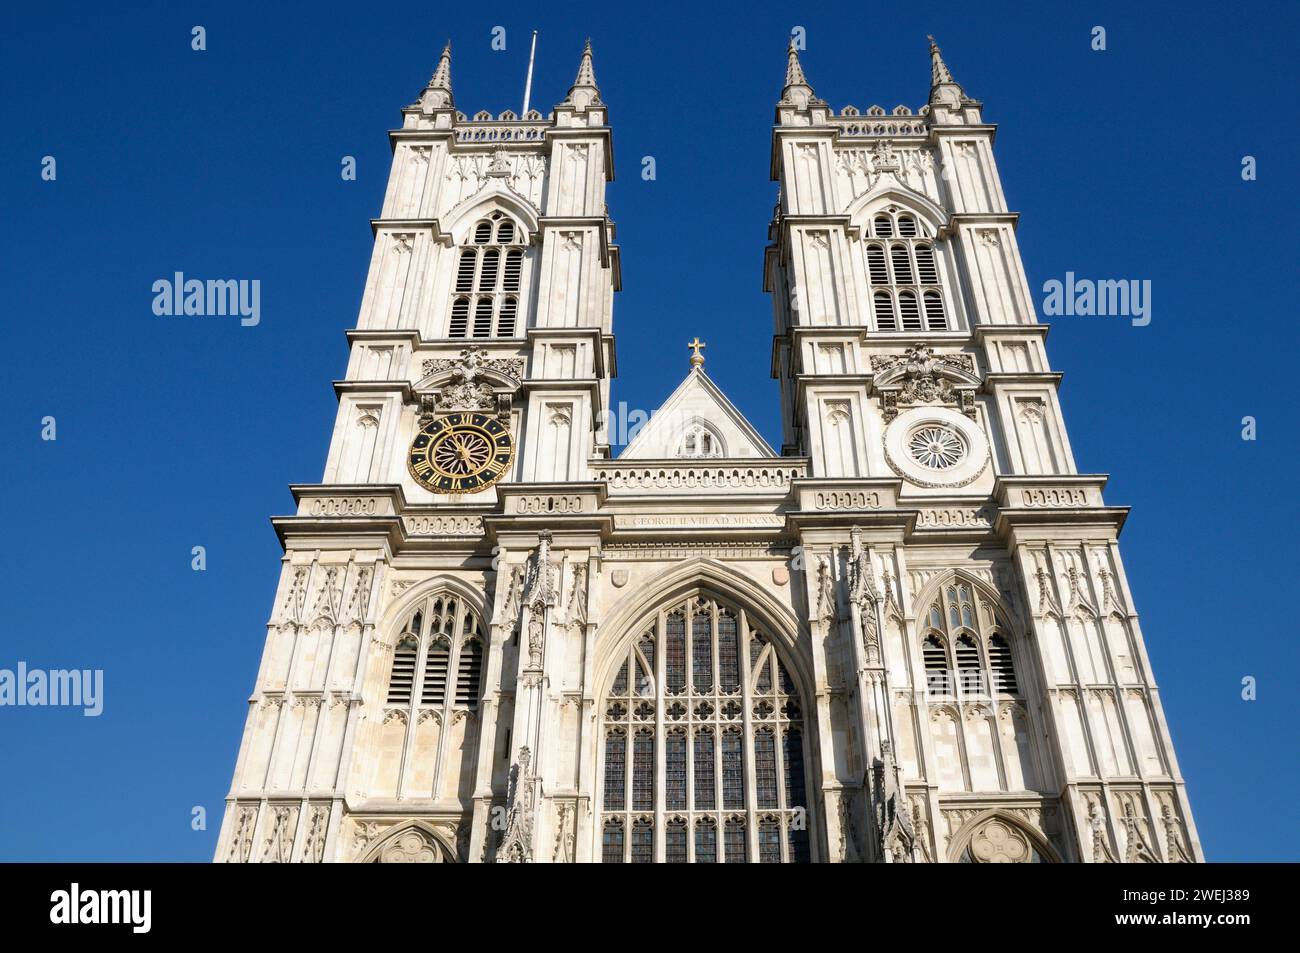 Architettura in stile gotico in pietra dei campanili della facciata occidentale sopra l'ingresso della Great West Door dell'Abbazia di Westminster nel centro di Londra, Inghilterra, Regno Unito Foto Stock